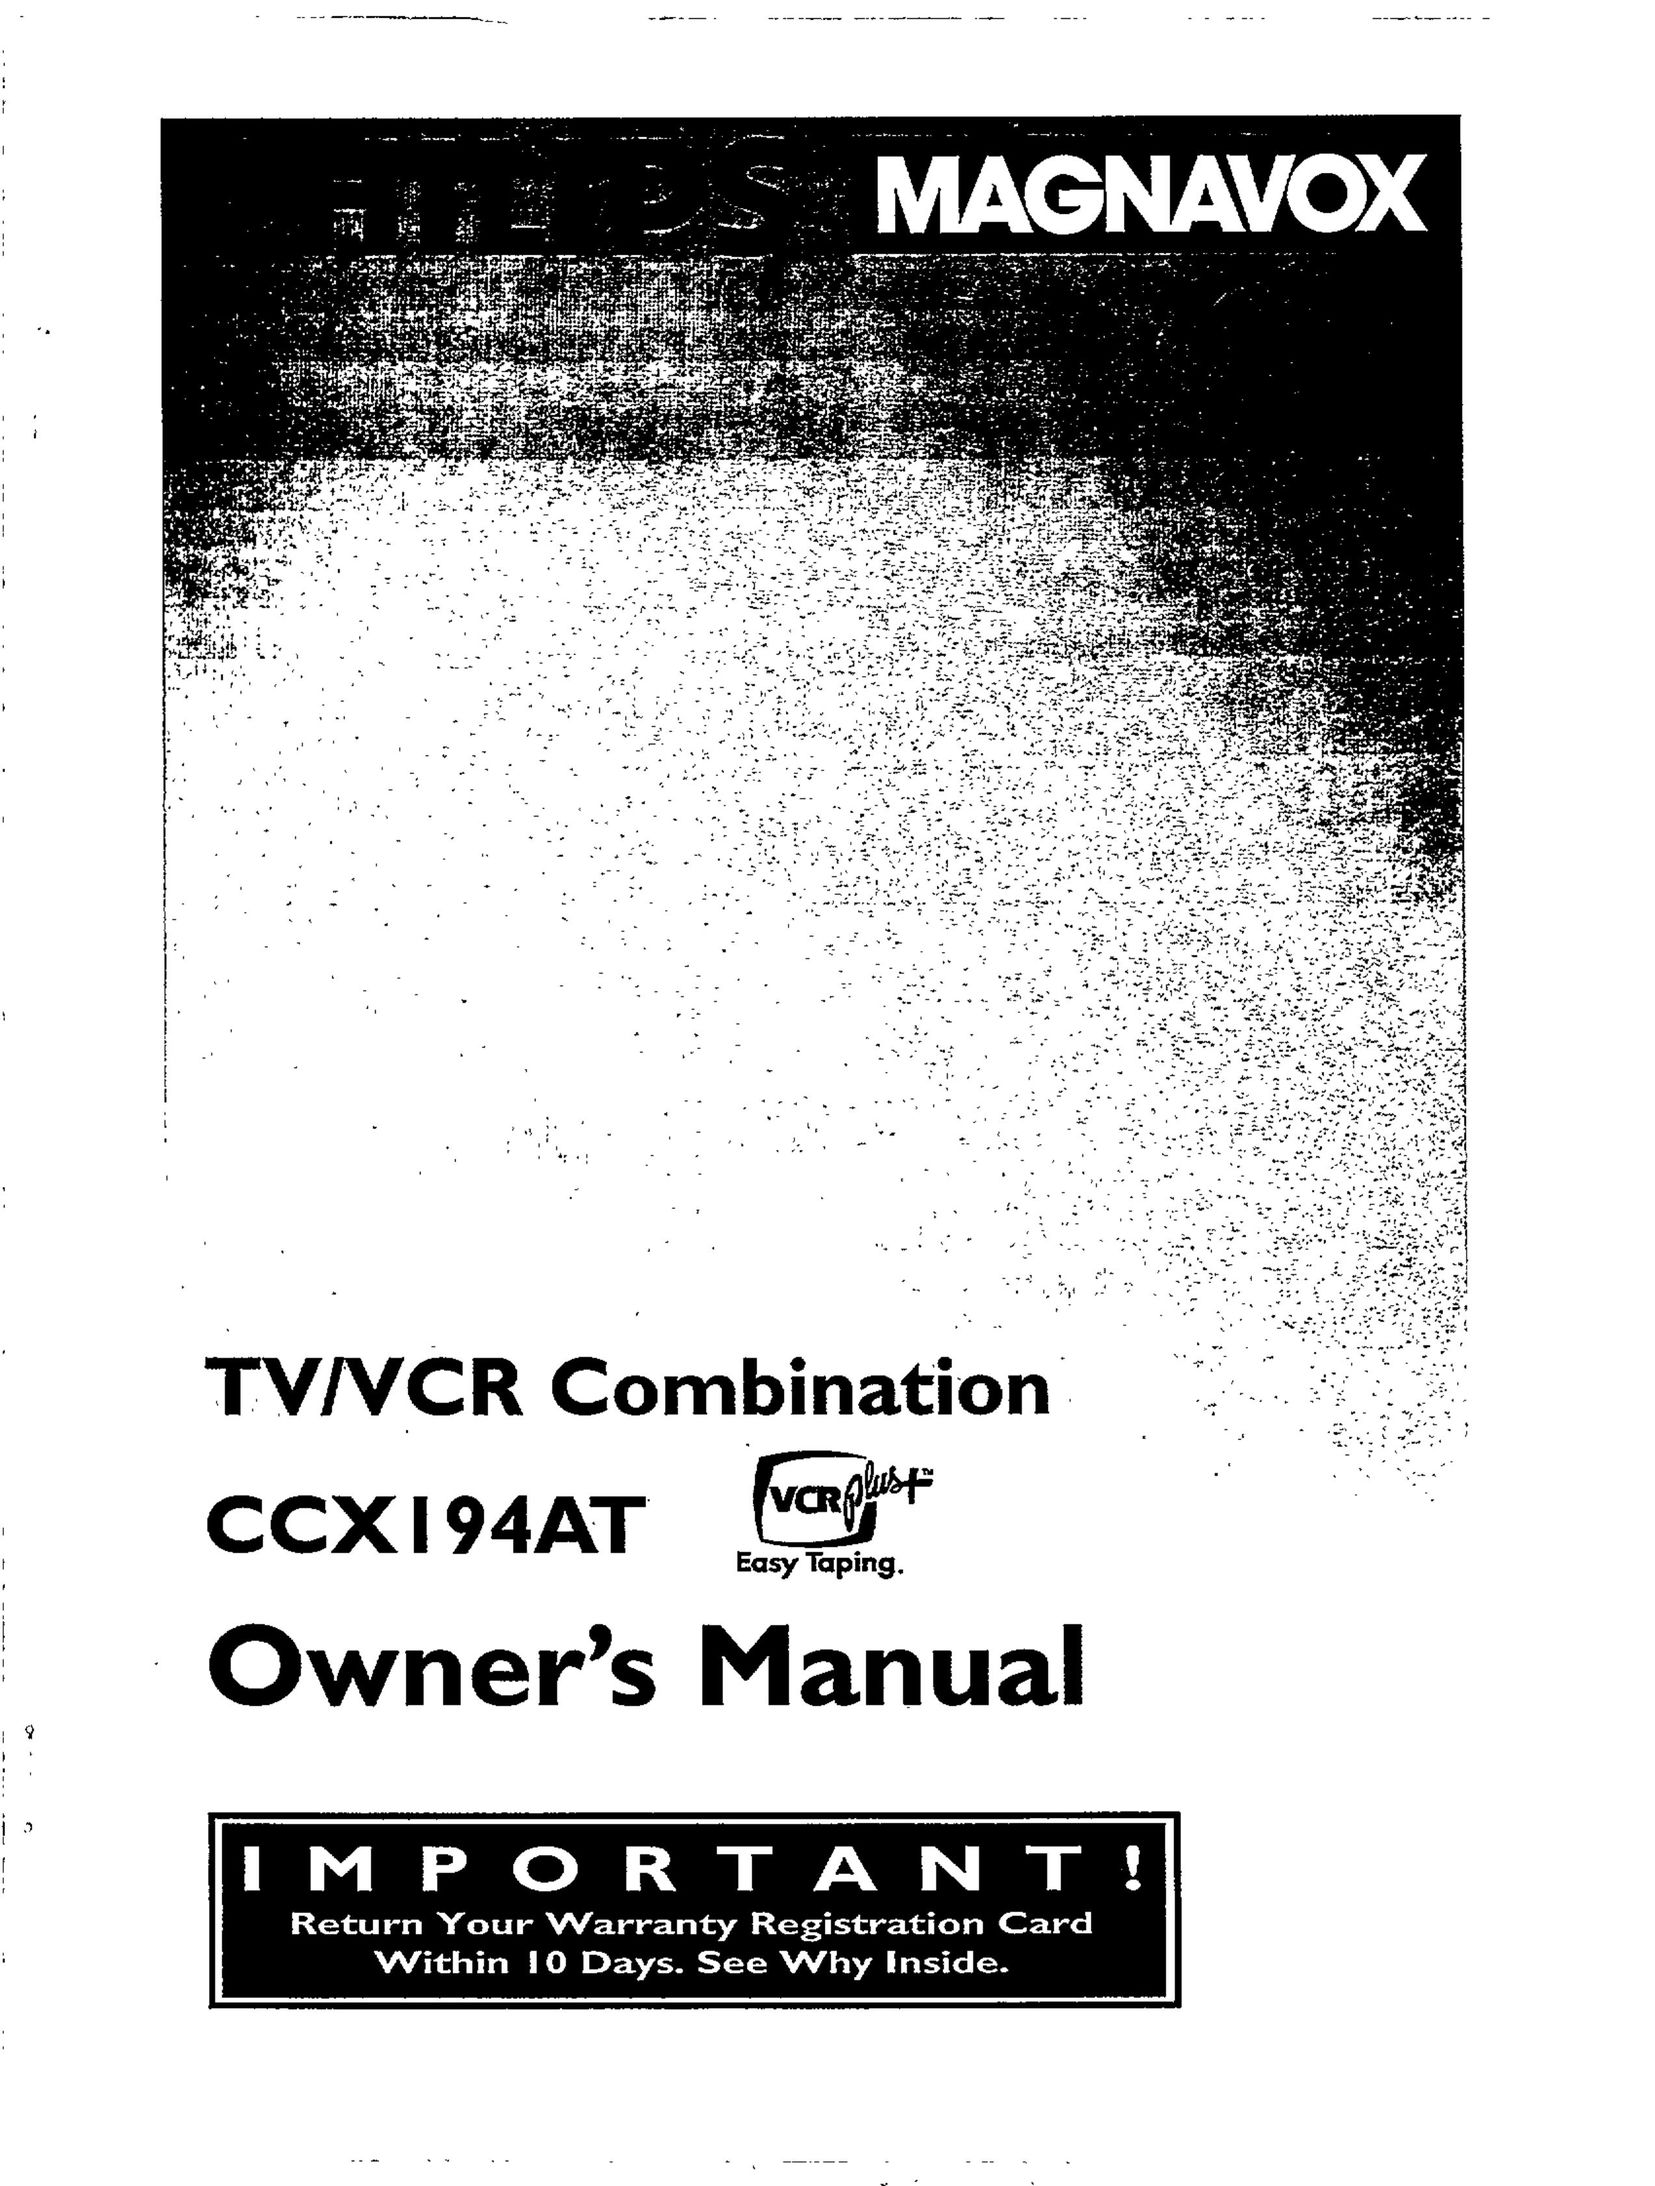 Magnavox CCX194AT TV VCR Combo User Manual